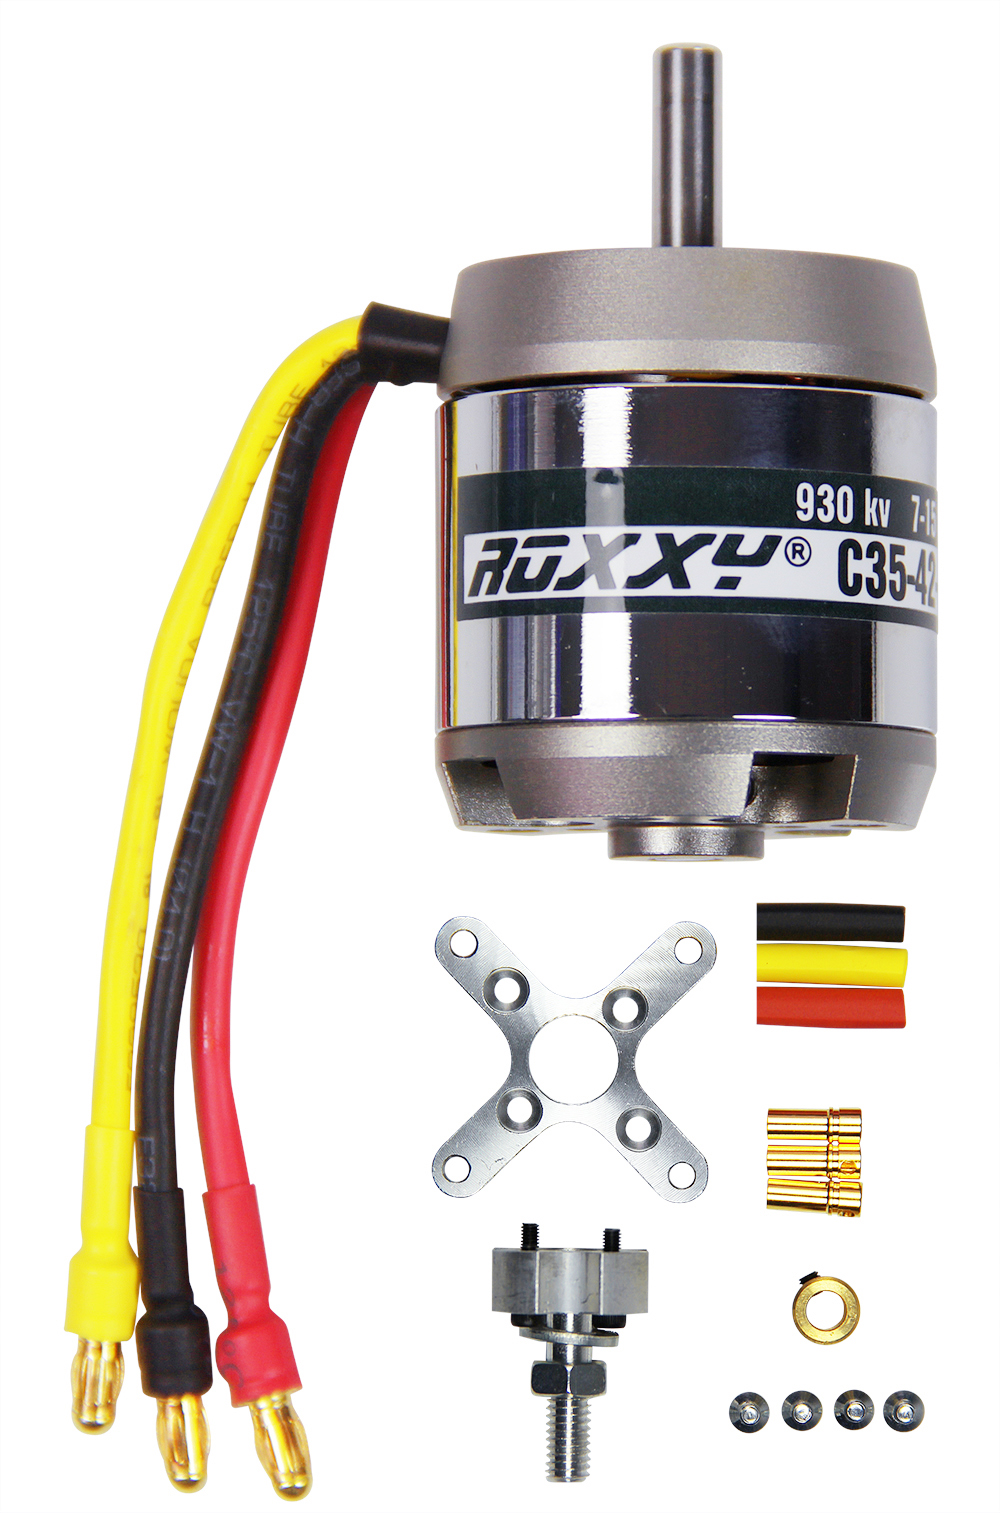 Multiplex ROXXY BL Outrunner C35-42-930kV